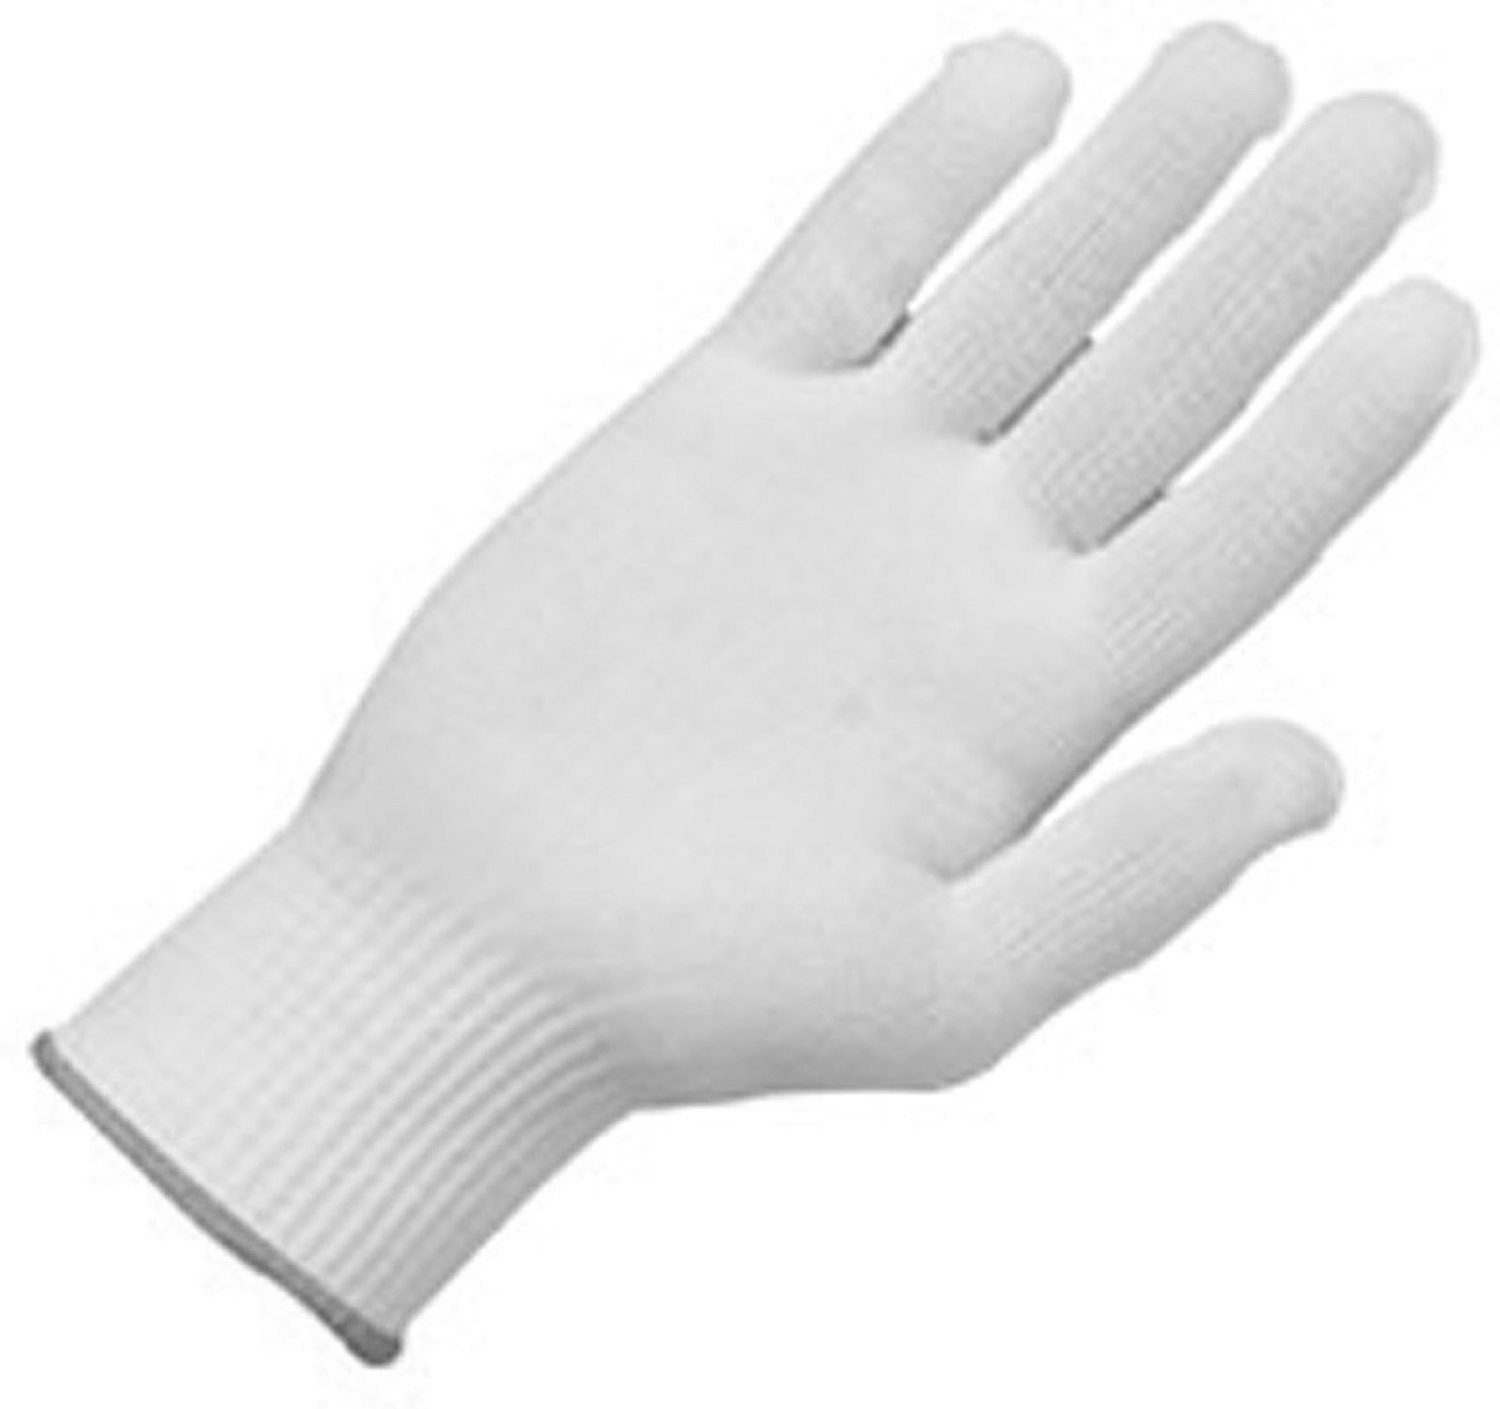 Zenport Gloves GN025 12 Pair Full Finger Gloves, Glove Liner, 10 Gram Nylon Construction